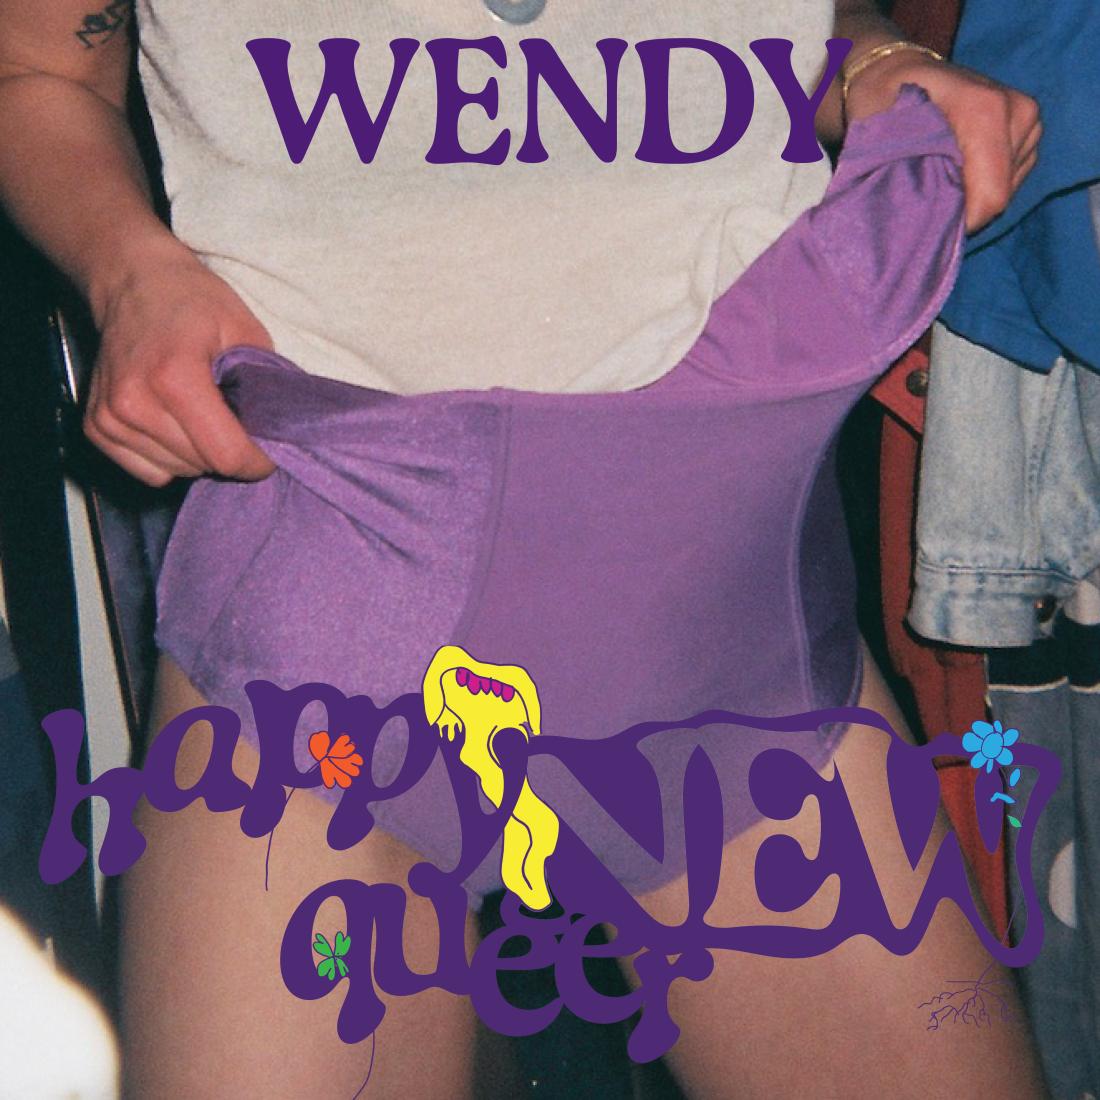 Foto van Wendy voor Happy New Queer